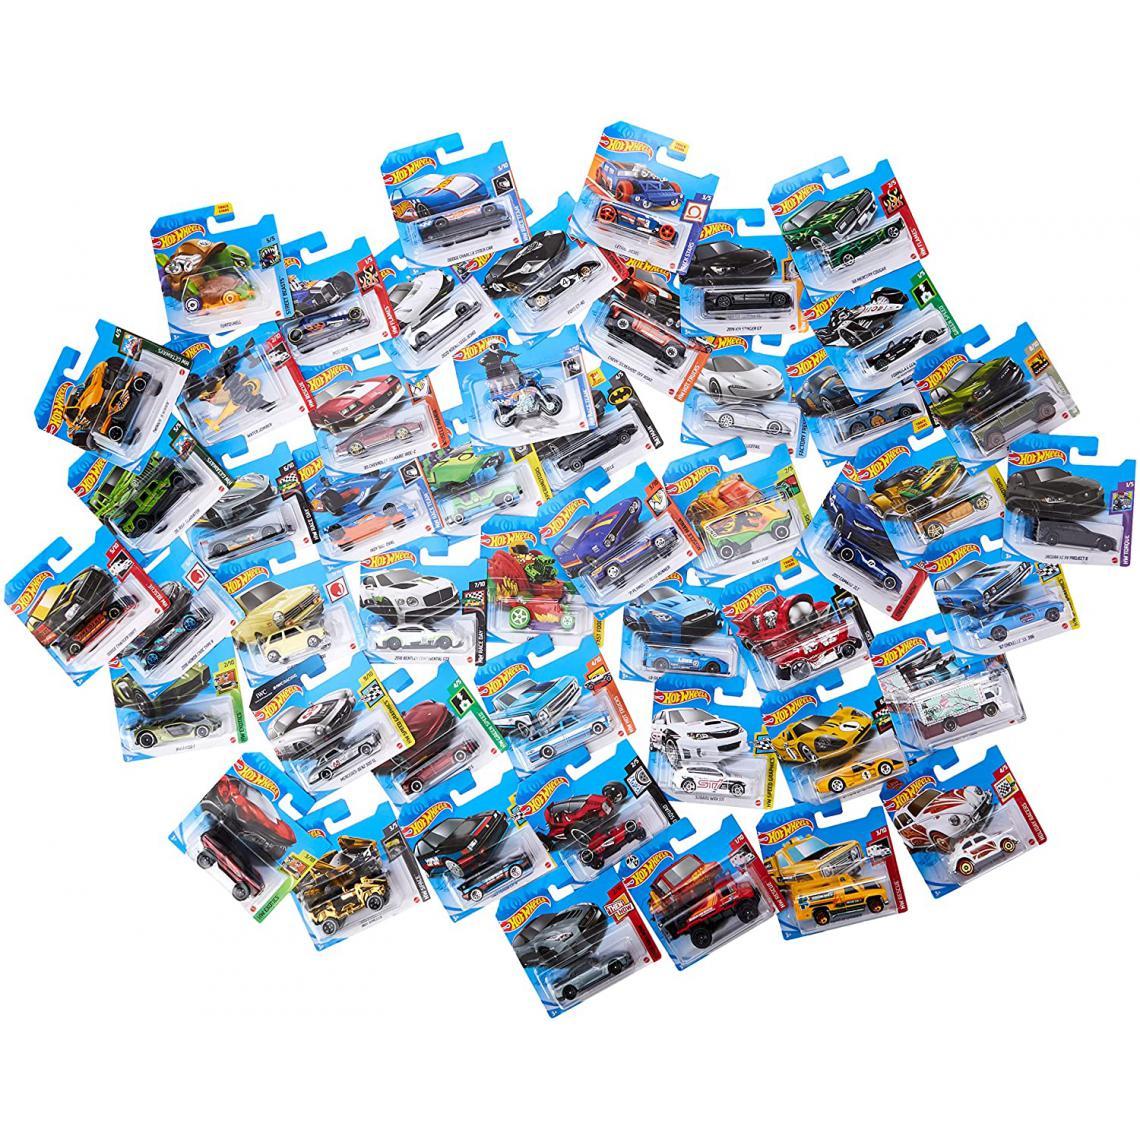 Hot Wheels - Coffret 50 véhicules pour enfant de petites voitures miniatures - Voiture de collection miniature